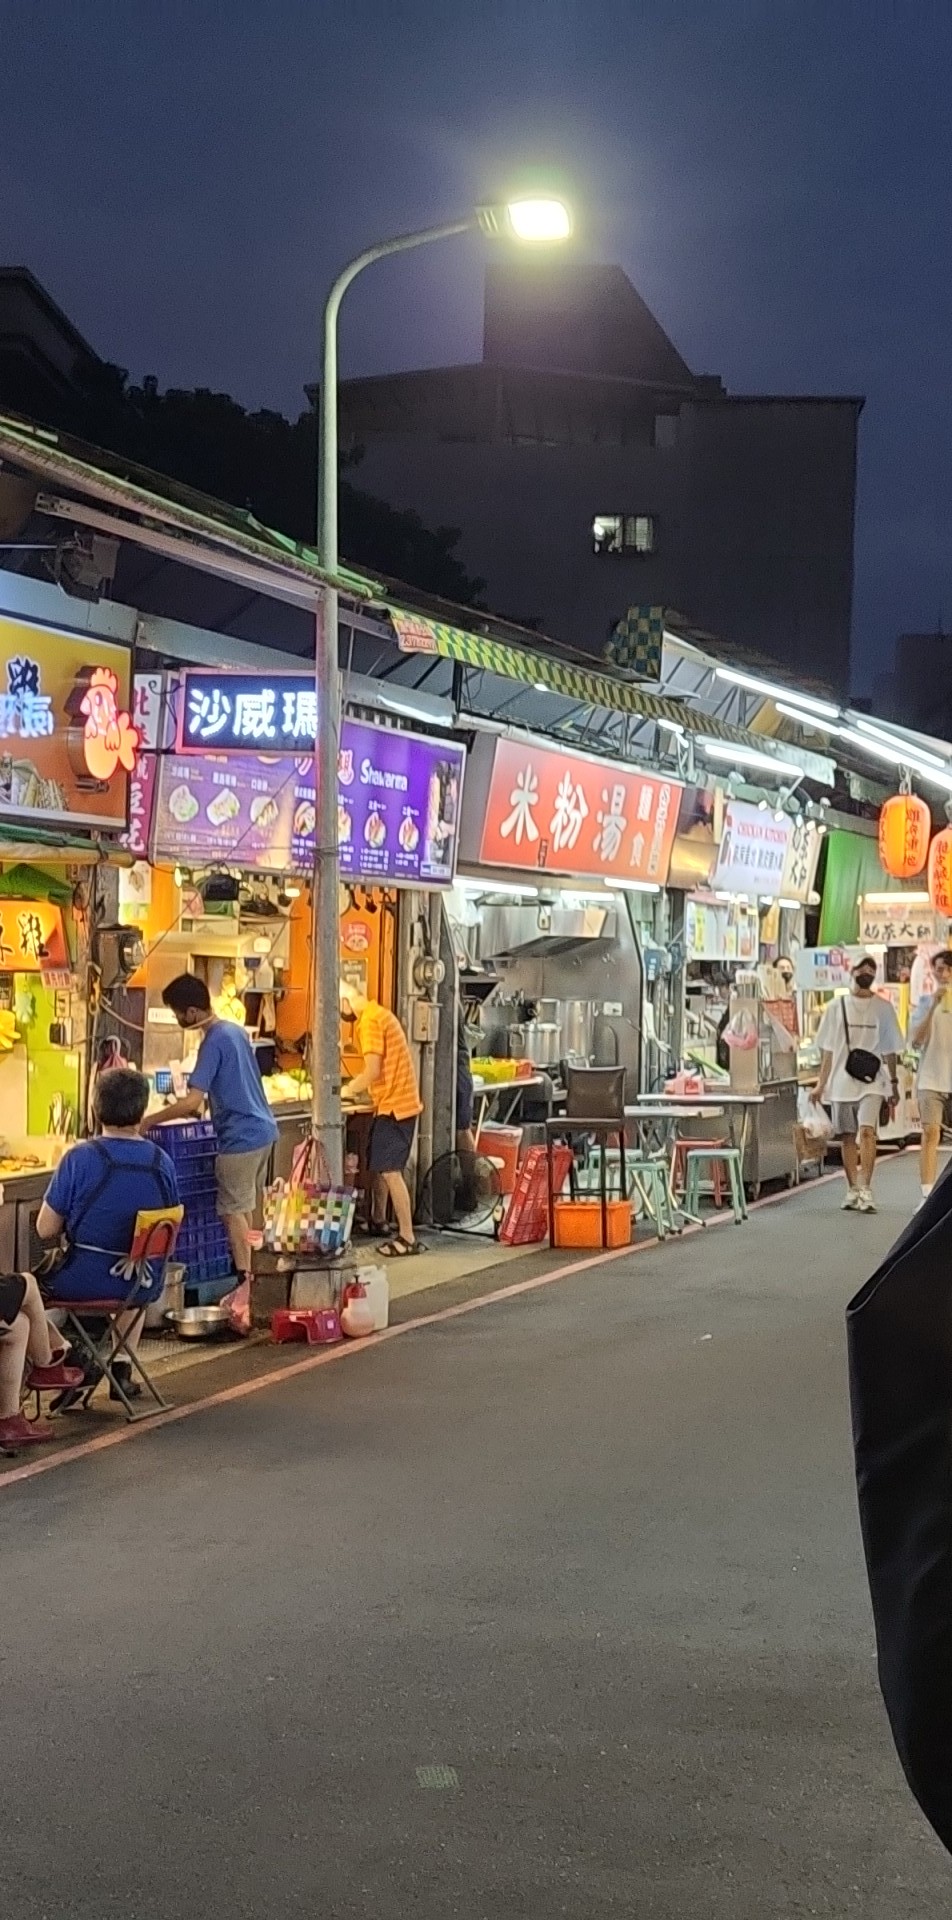 Shida Night Market (師大夜市)